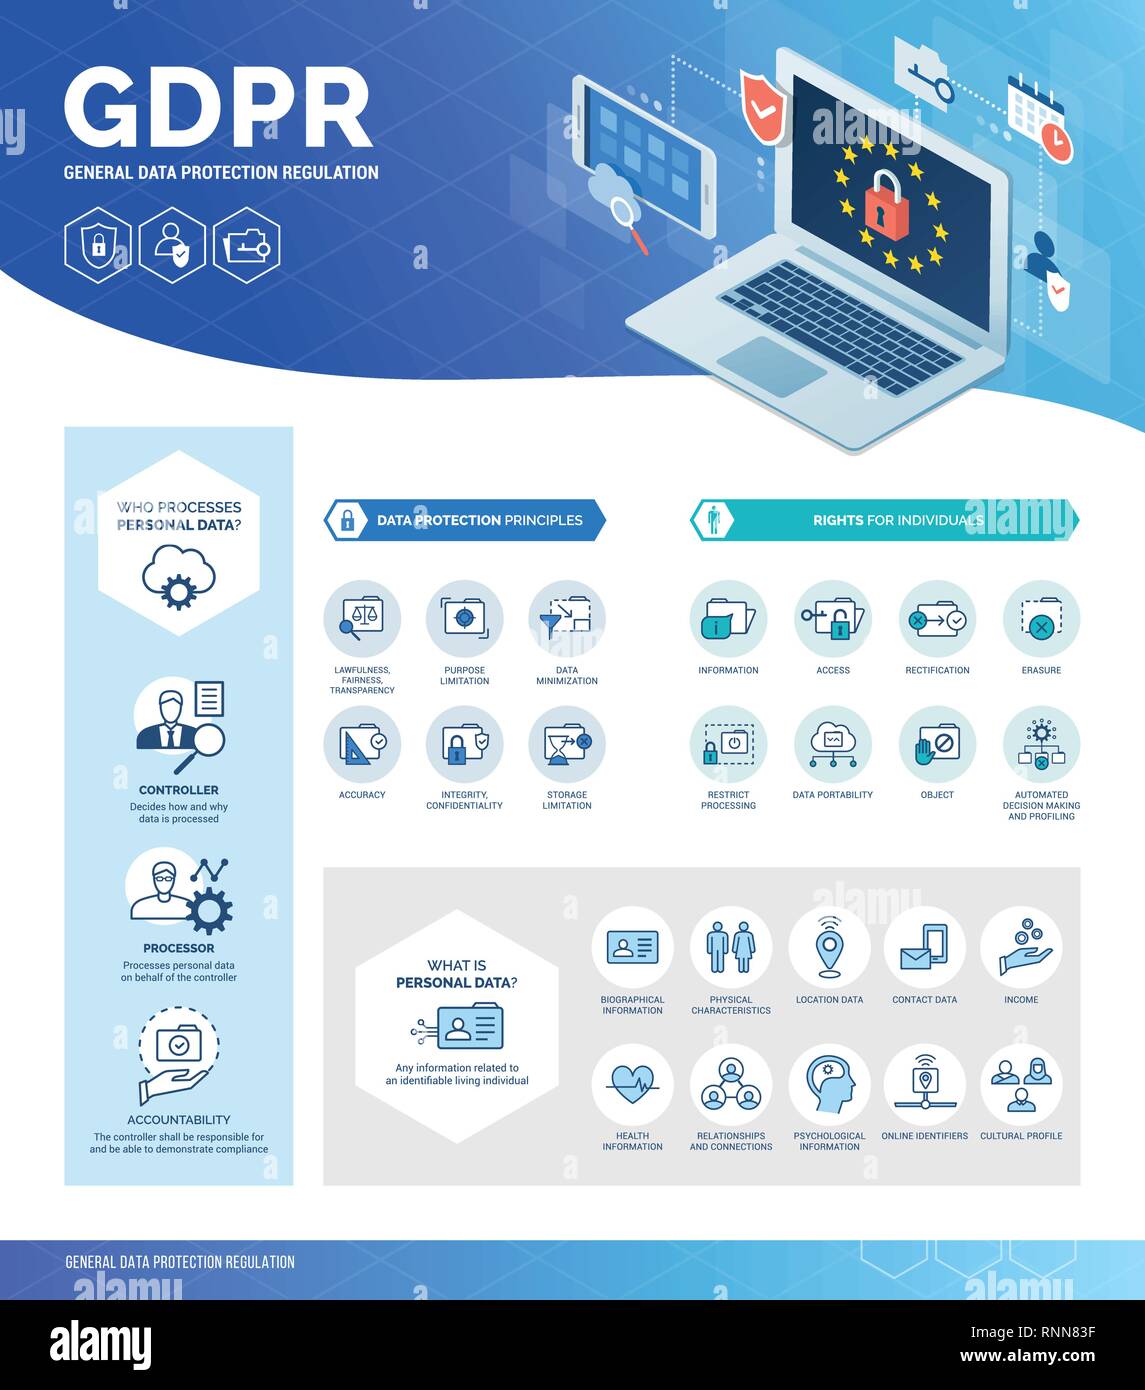 Reglamento general de protección de datos (GDPR) infográfico con iconos y texto, información personal, seguridad y privacidad del usuario concepto Ilustración del Vector